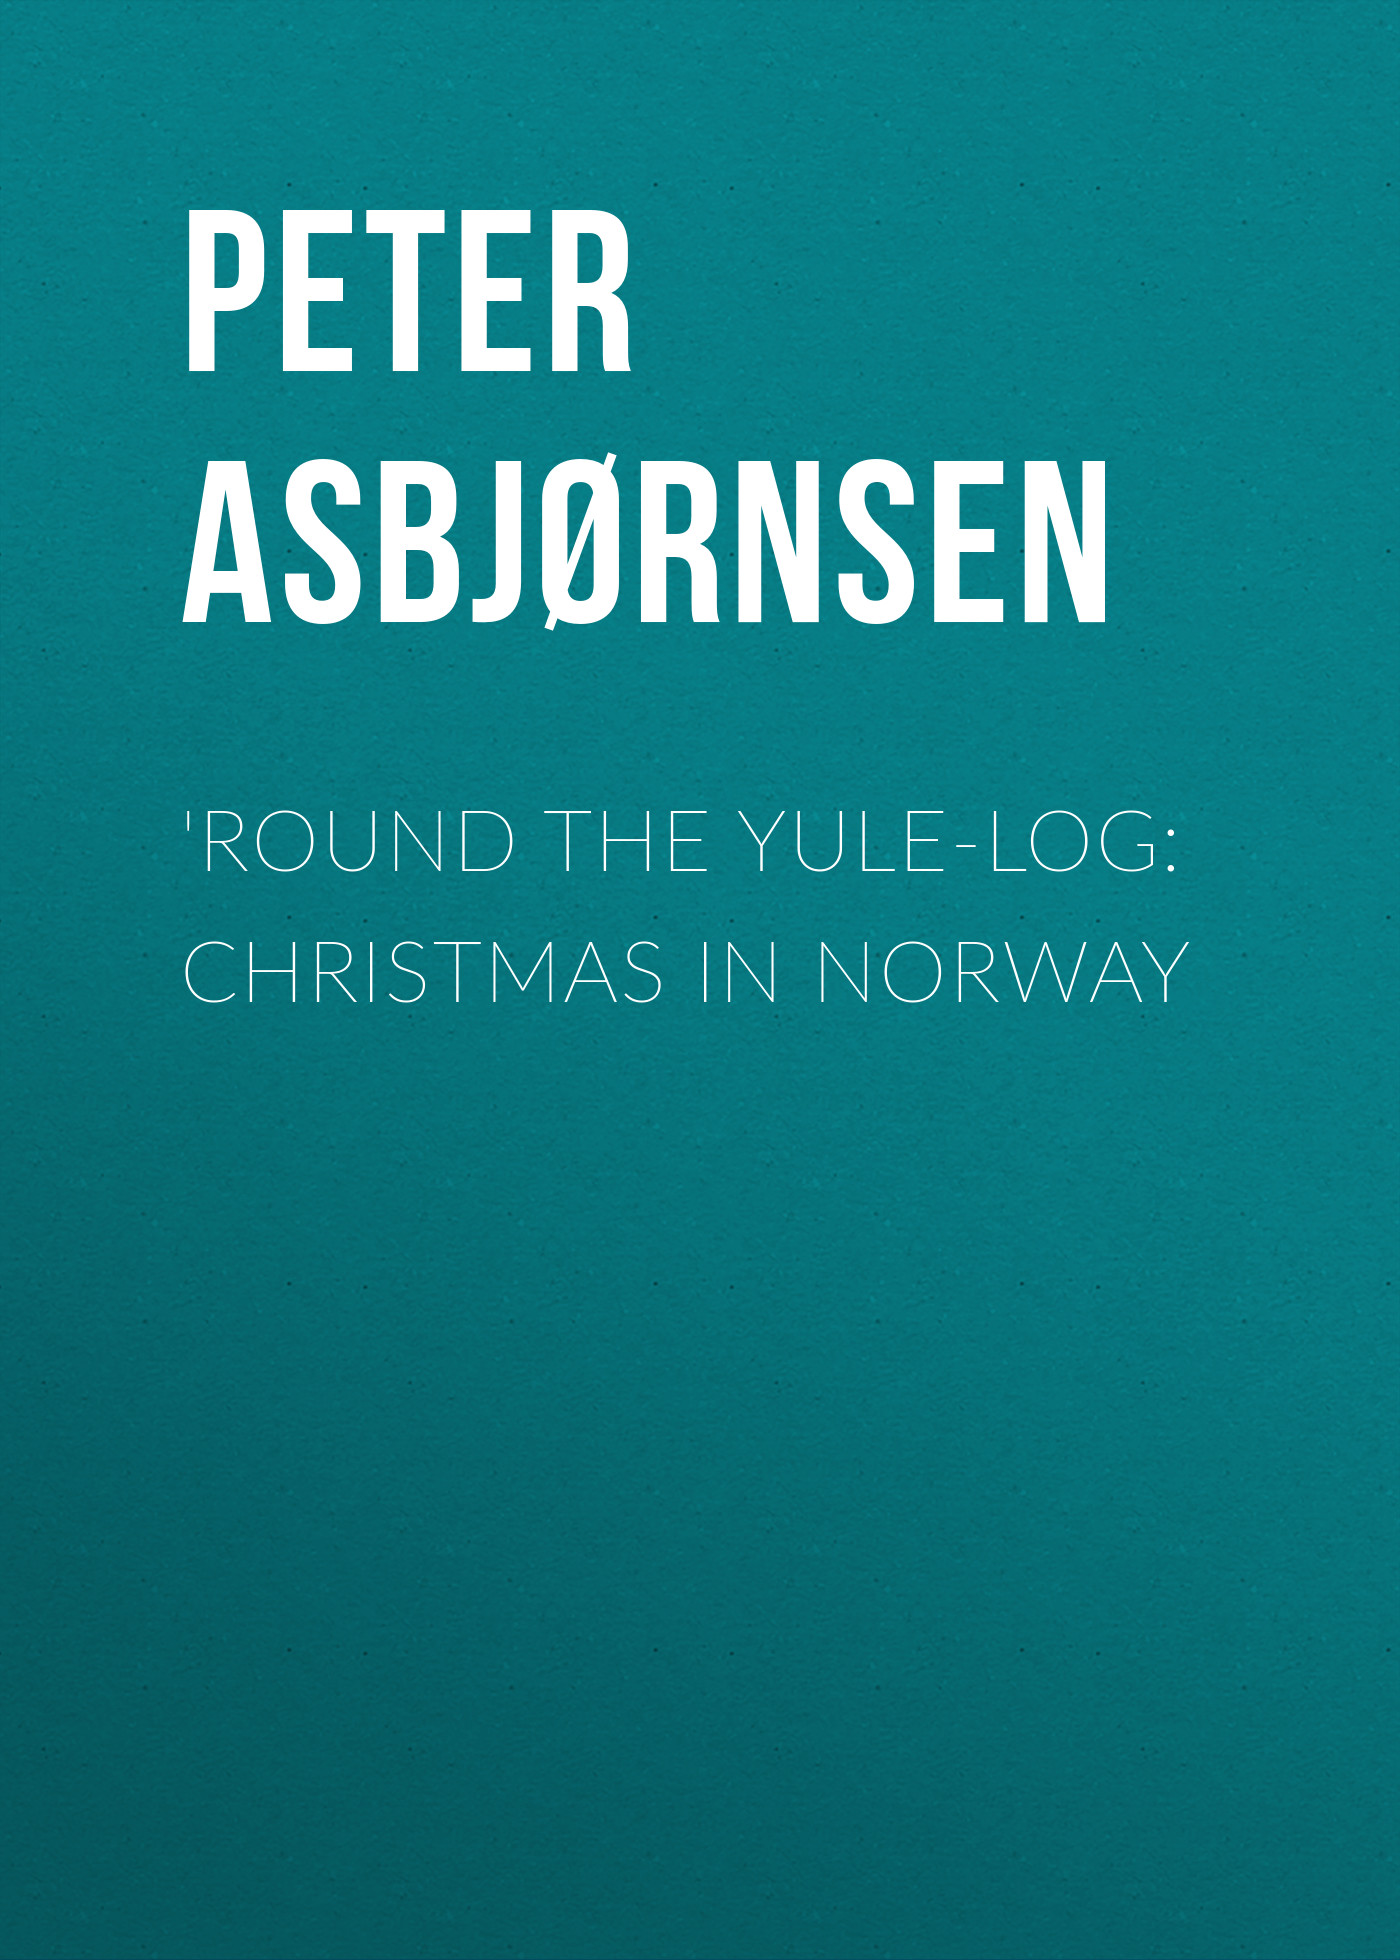 Книга 'Round the yule-log: Christmas in Norway из серии , созданная Peter Asbjørnsen, может относится к жанру Зарубежная старинная литература, Зарубежная классика. Стоимость электронной книги 'Round the yule-log: Christmas in Norway с идентификатором 24165492 составляет 0.90 руб.